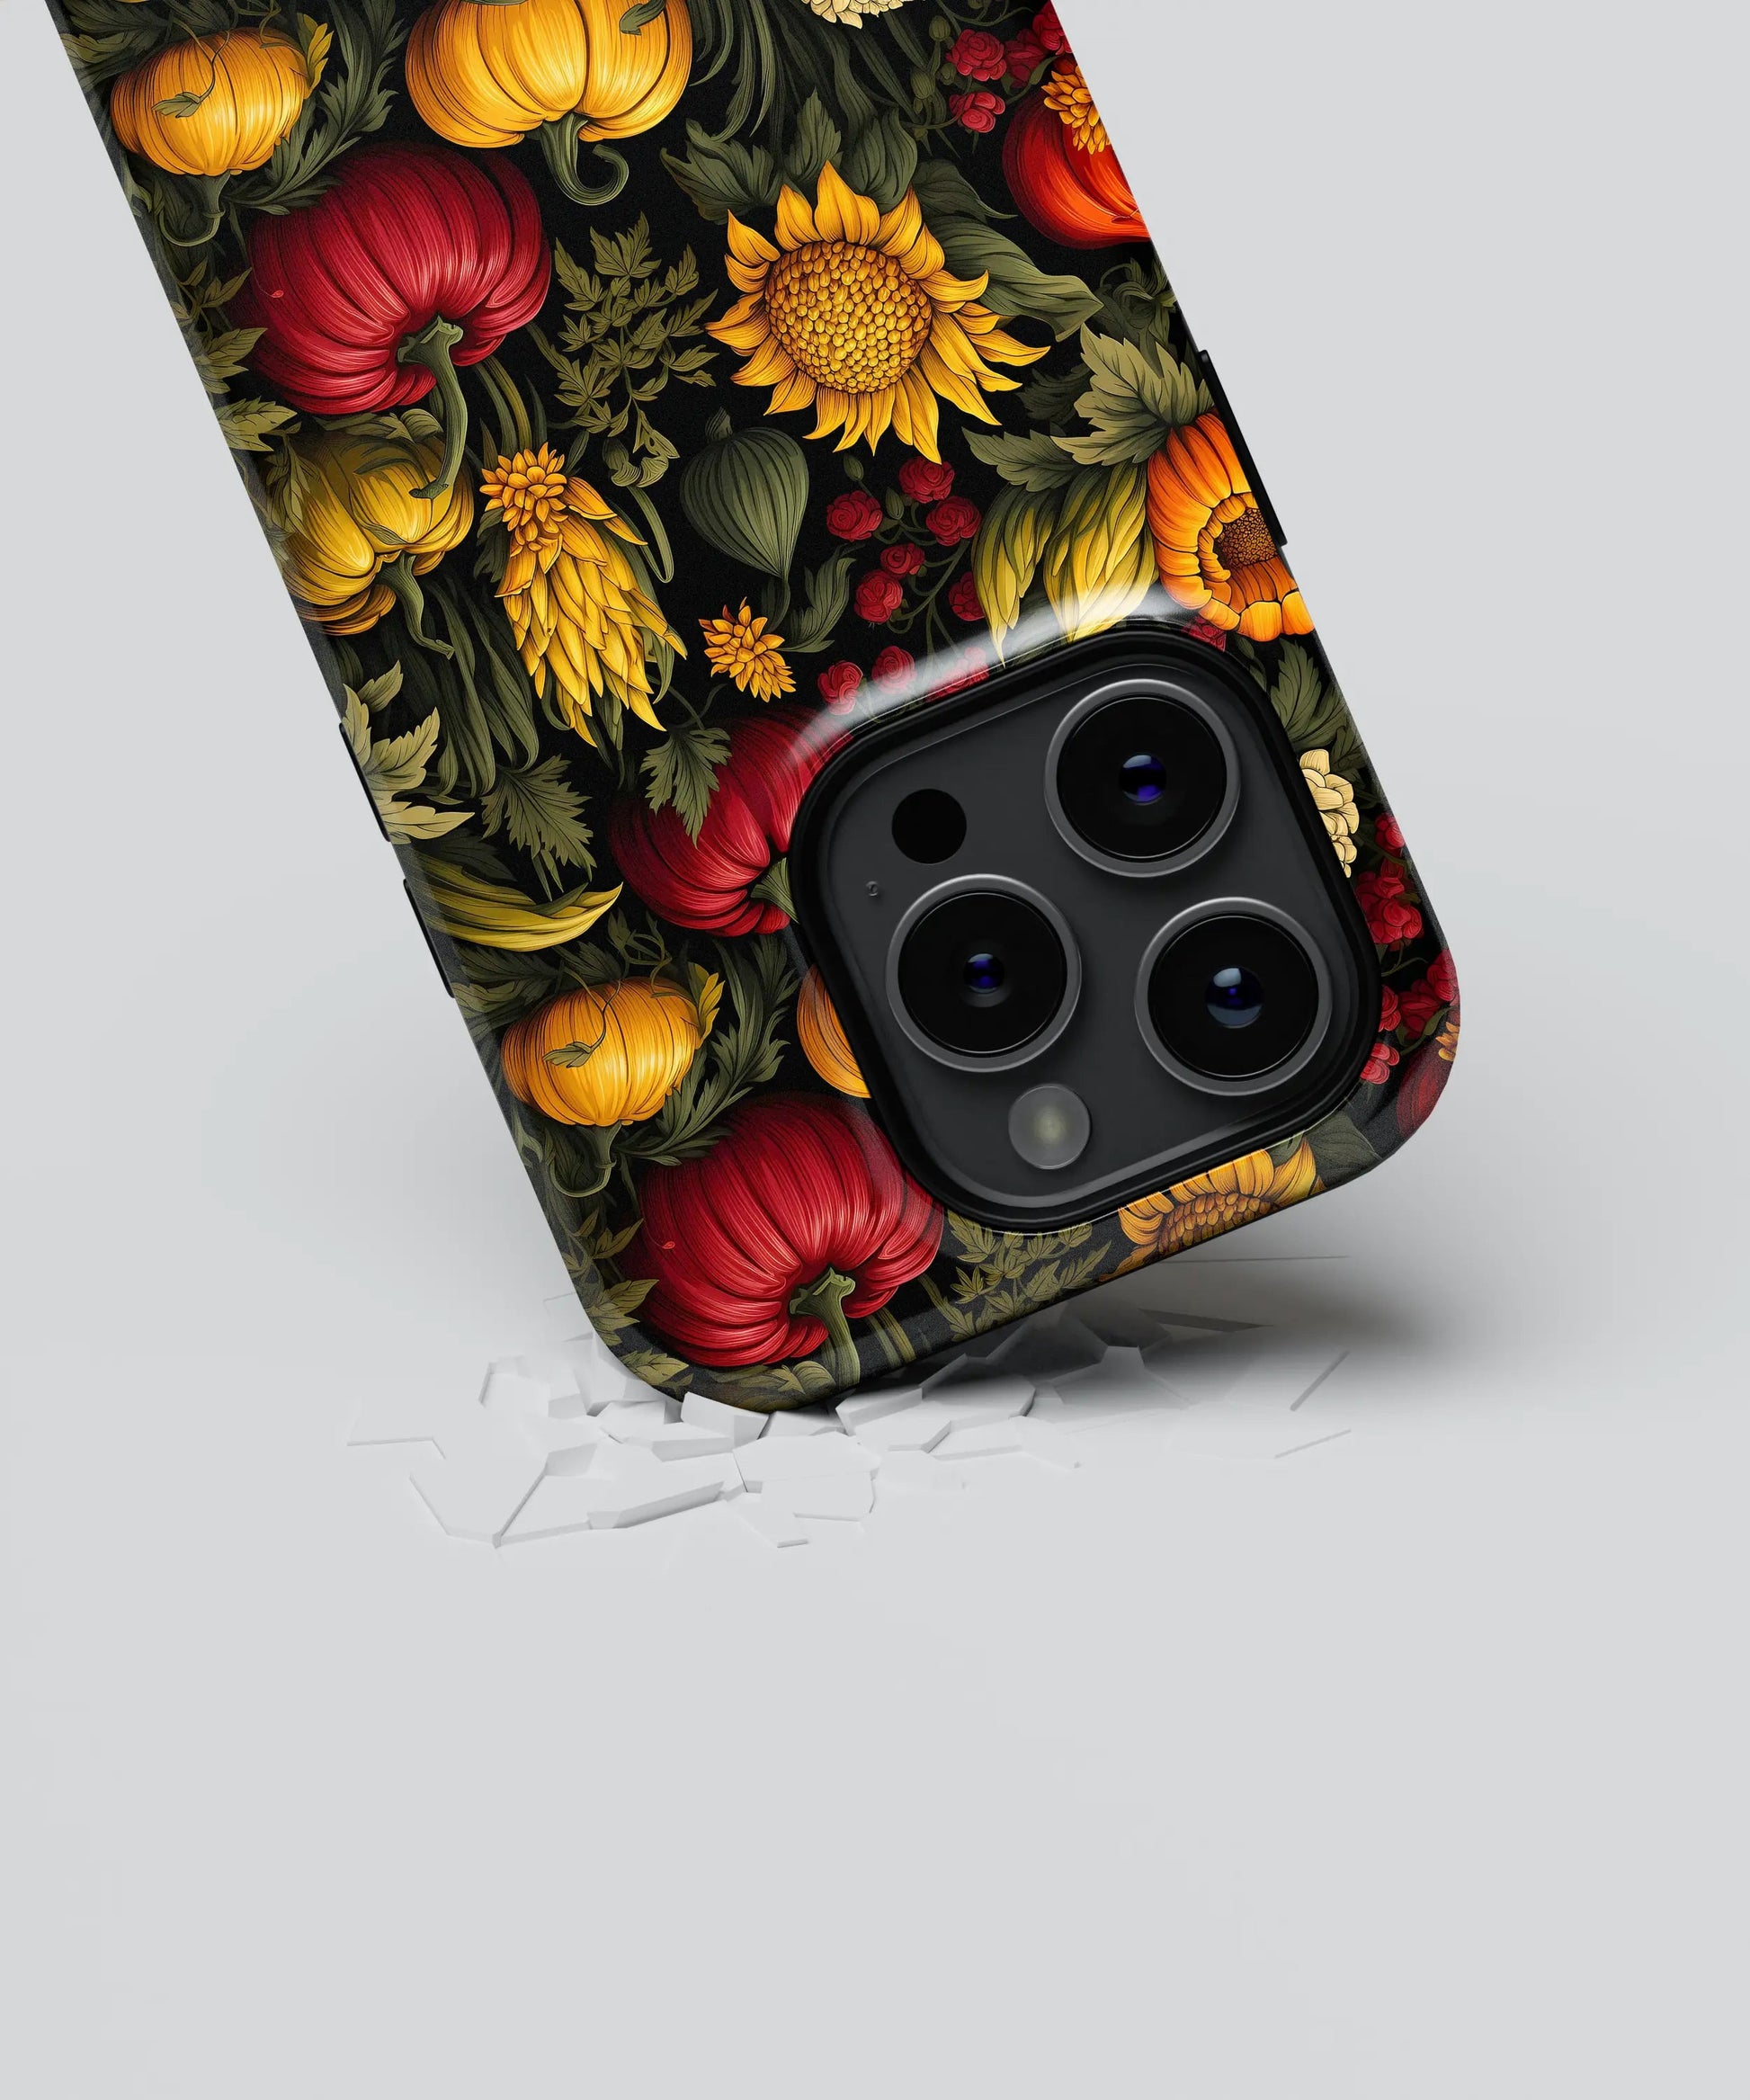 Autumn Harvest - iPhone Case-Tousphone